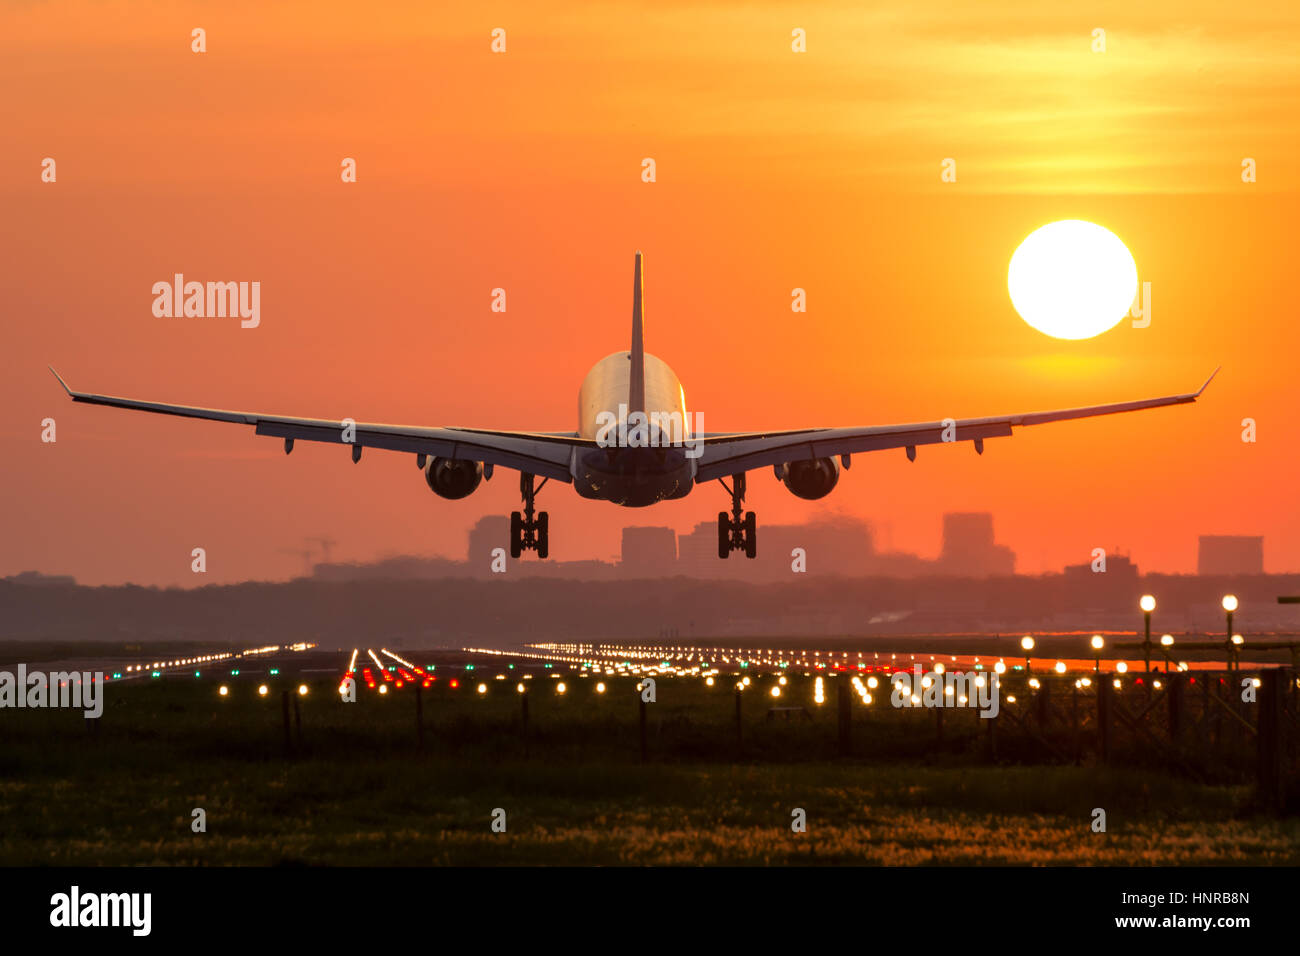 Avion de passagers au cours de l'atterrissage est un magnifique lever du soleil. L'avion est presque posé sur la piste. Banque D'Images